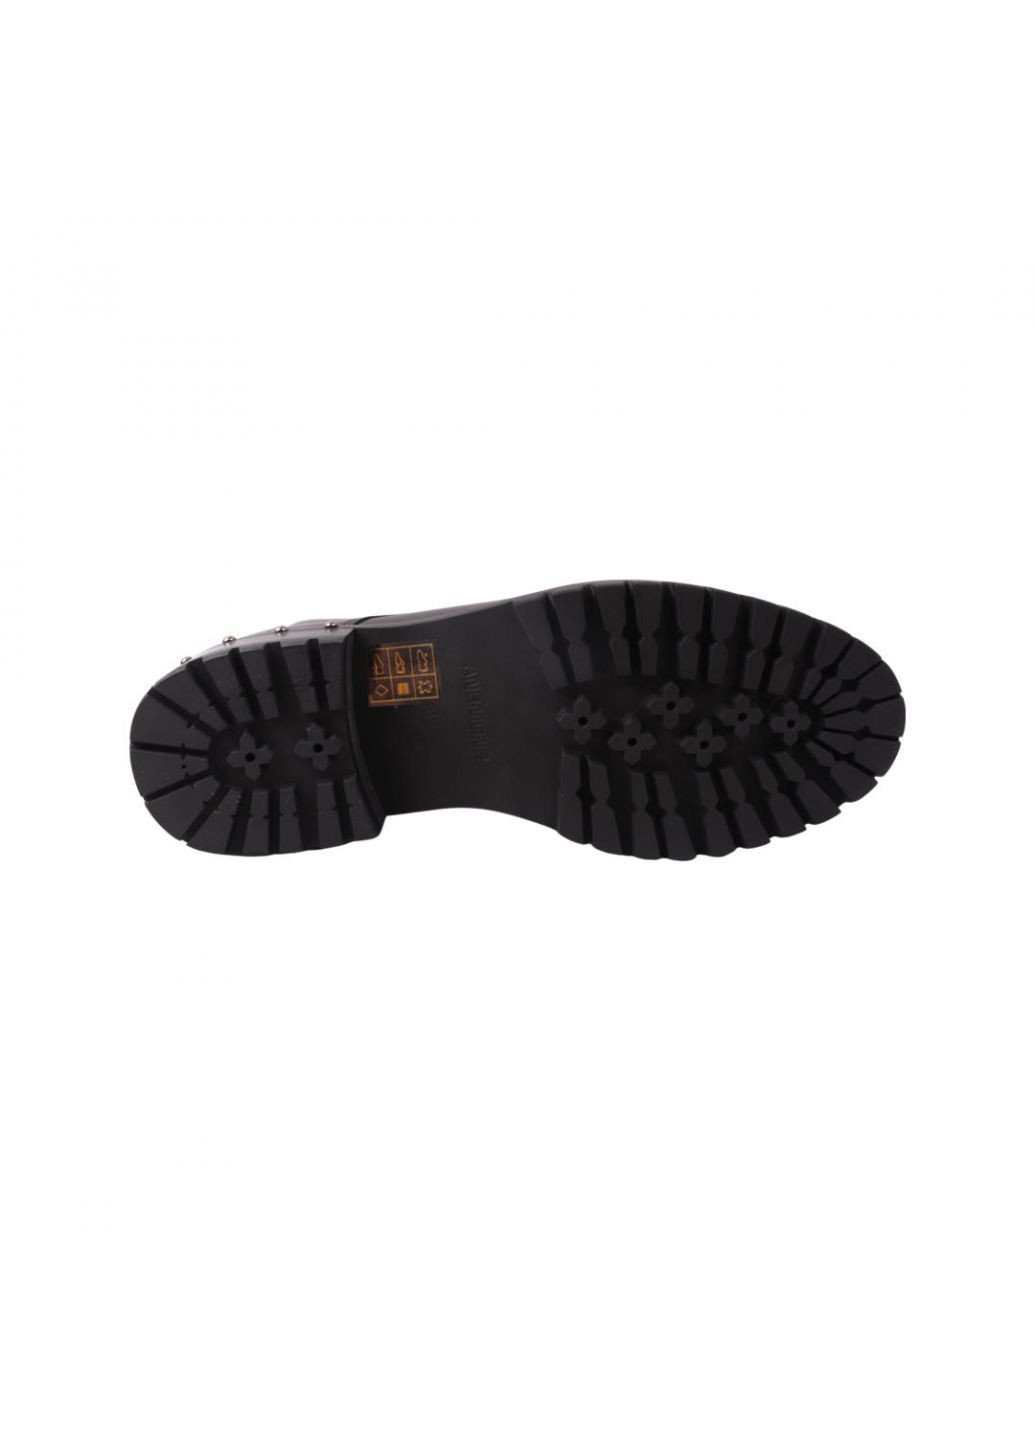 ботинки женские черные натуральная кожа Anemone